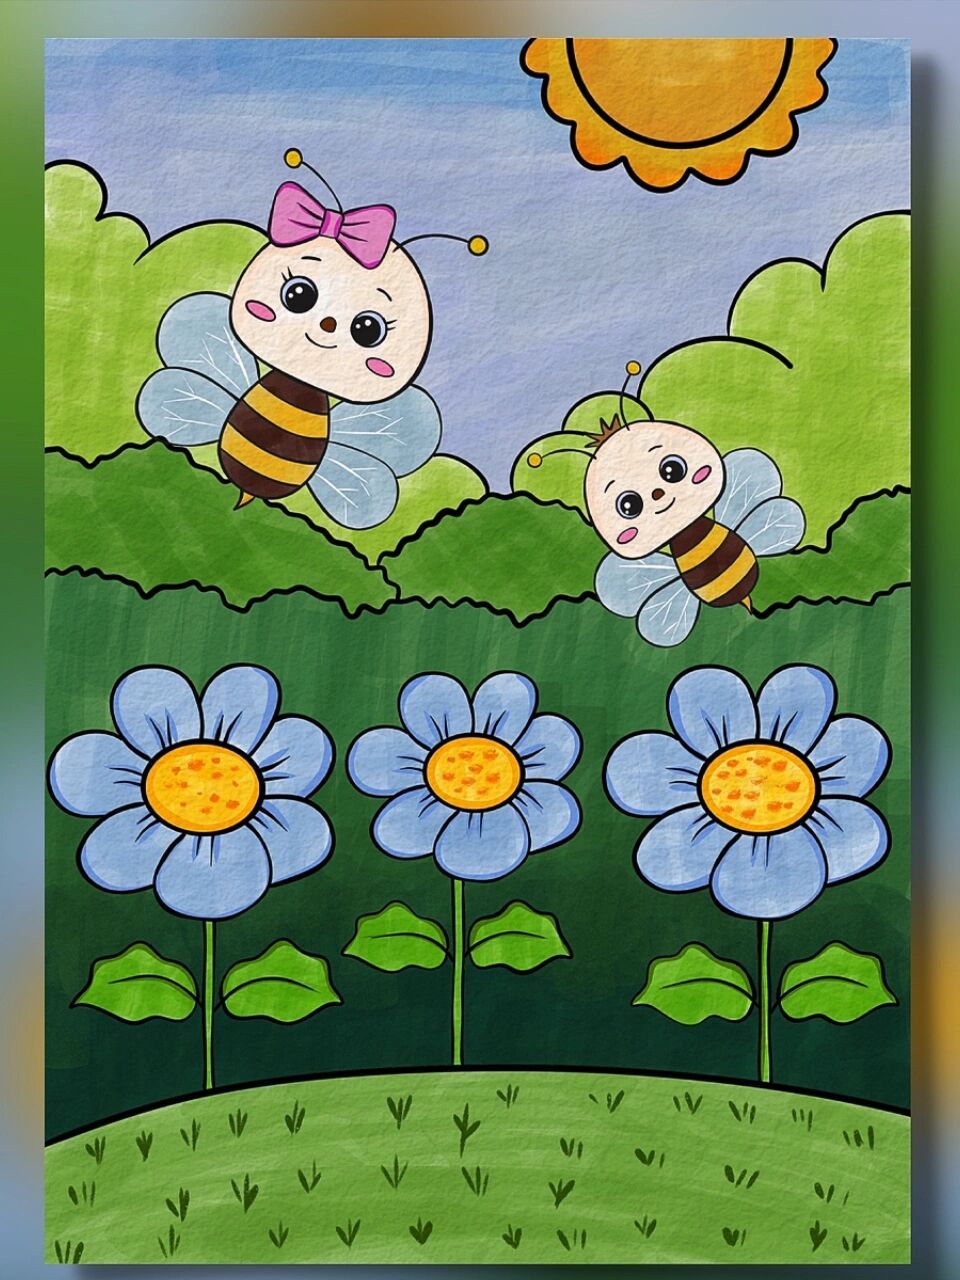 春天蜜蜂采花简笔画图片